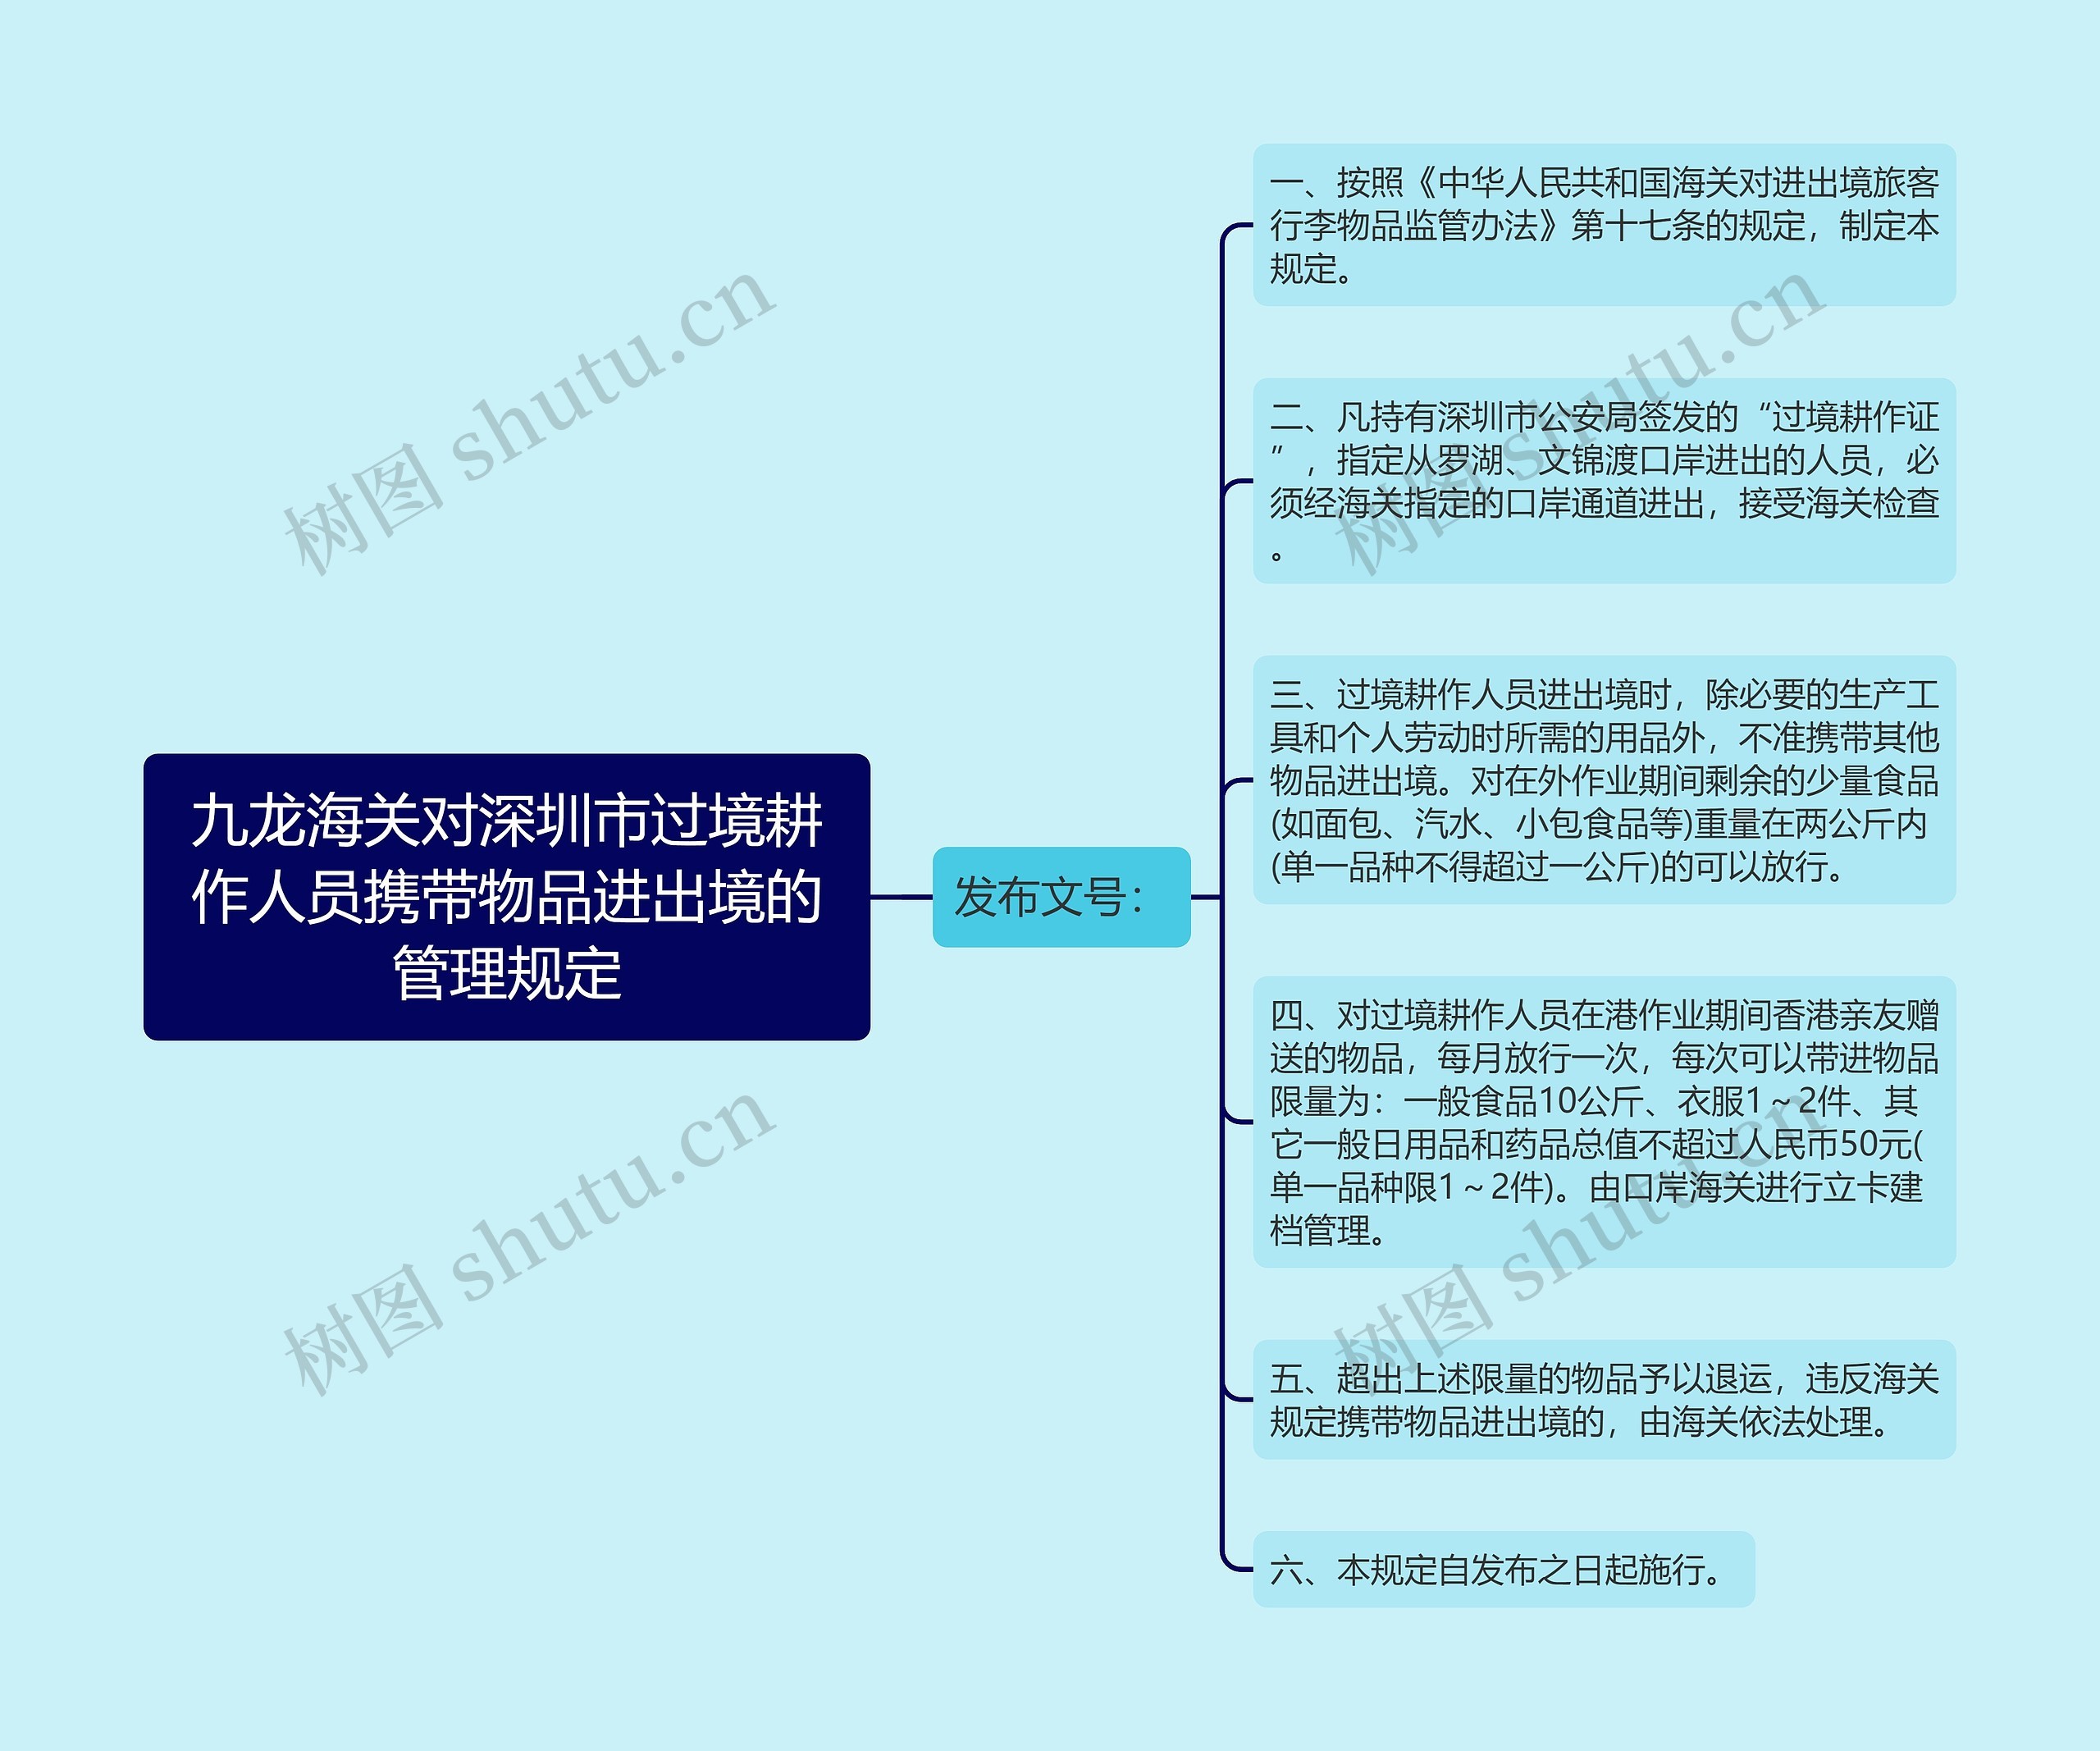 九龙海关对深圳市过境耕作人员携带物品进出境的管理规定